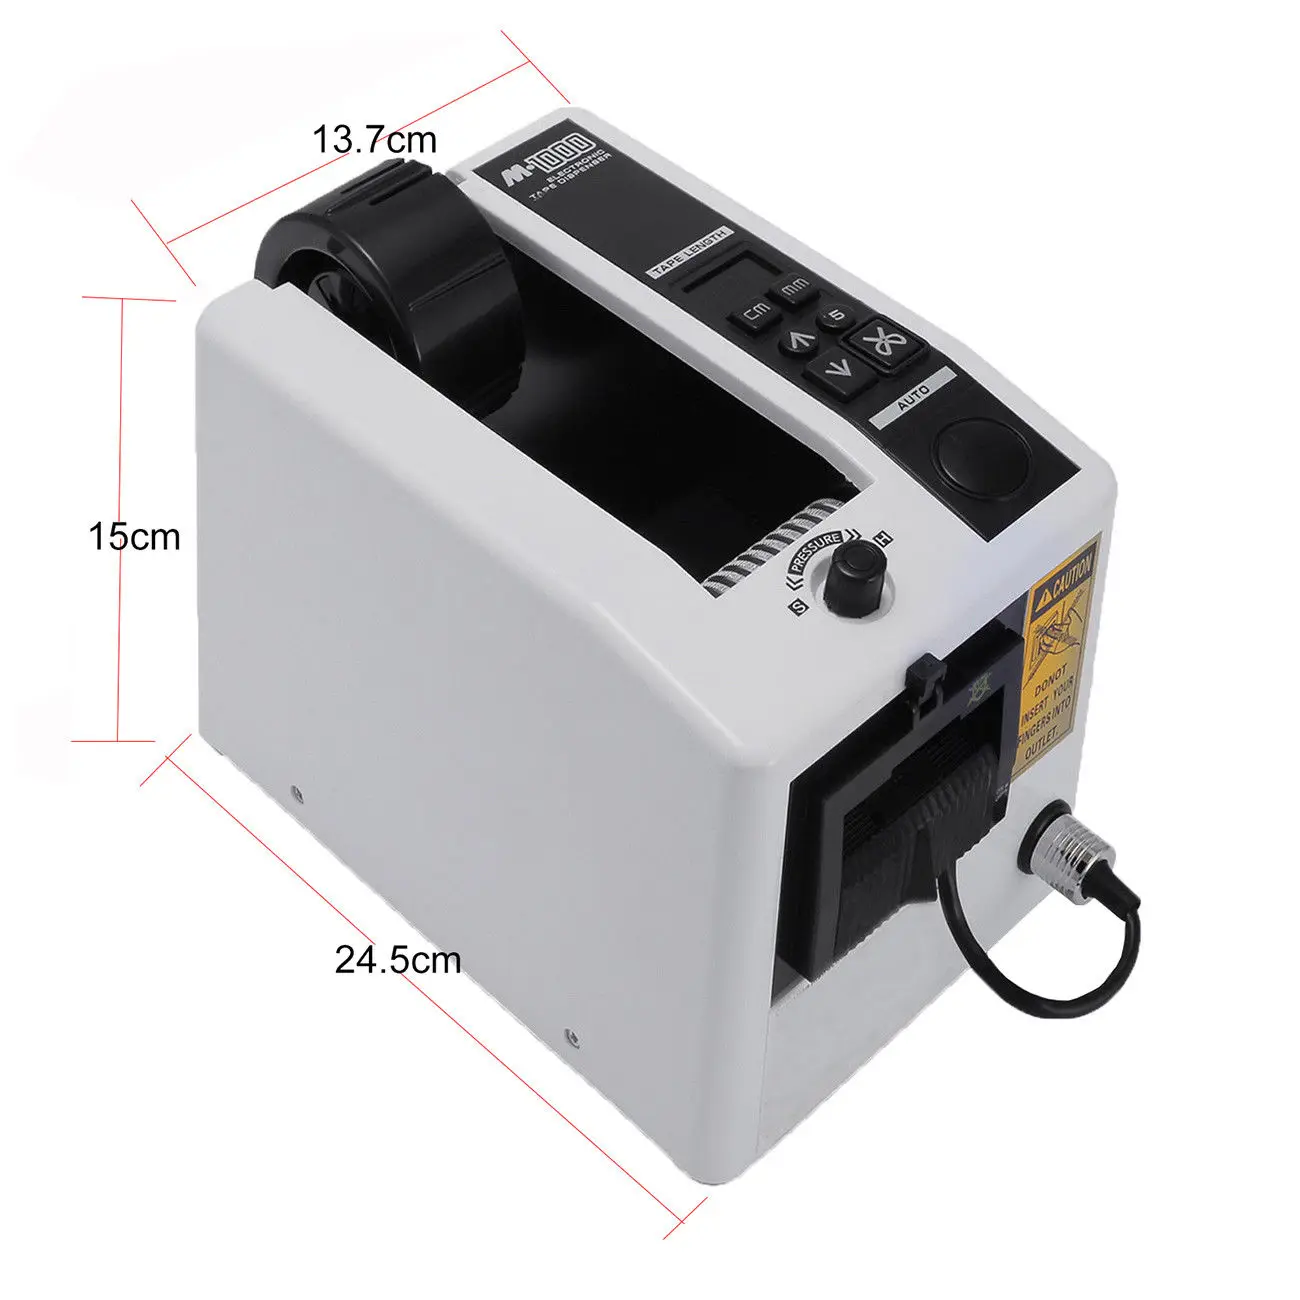 20-999mm M-1000 18W Automatic Tape Dispenser Electric Adhesive Tape Cutter Cutting Machine